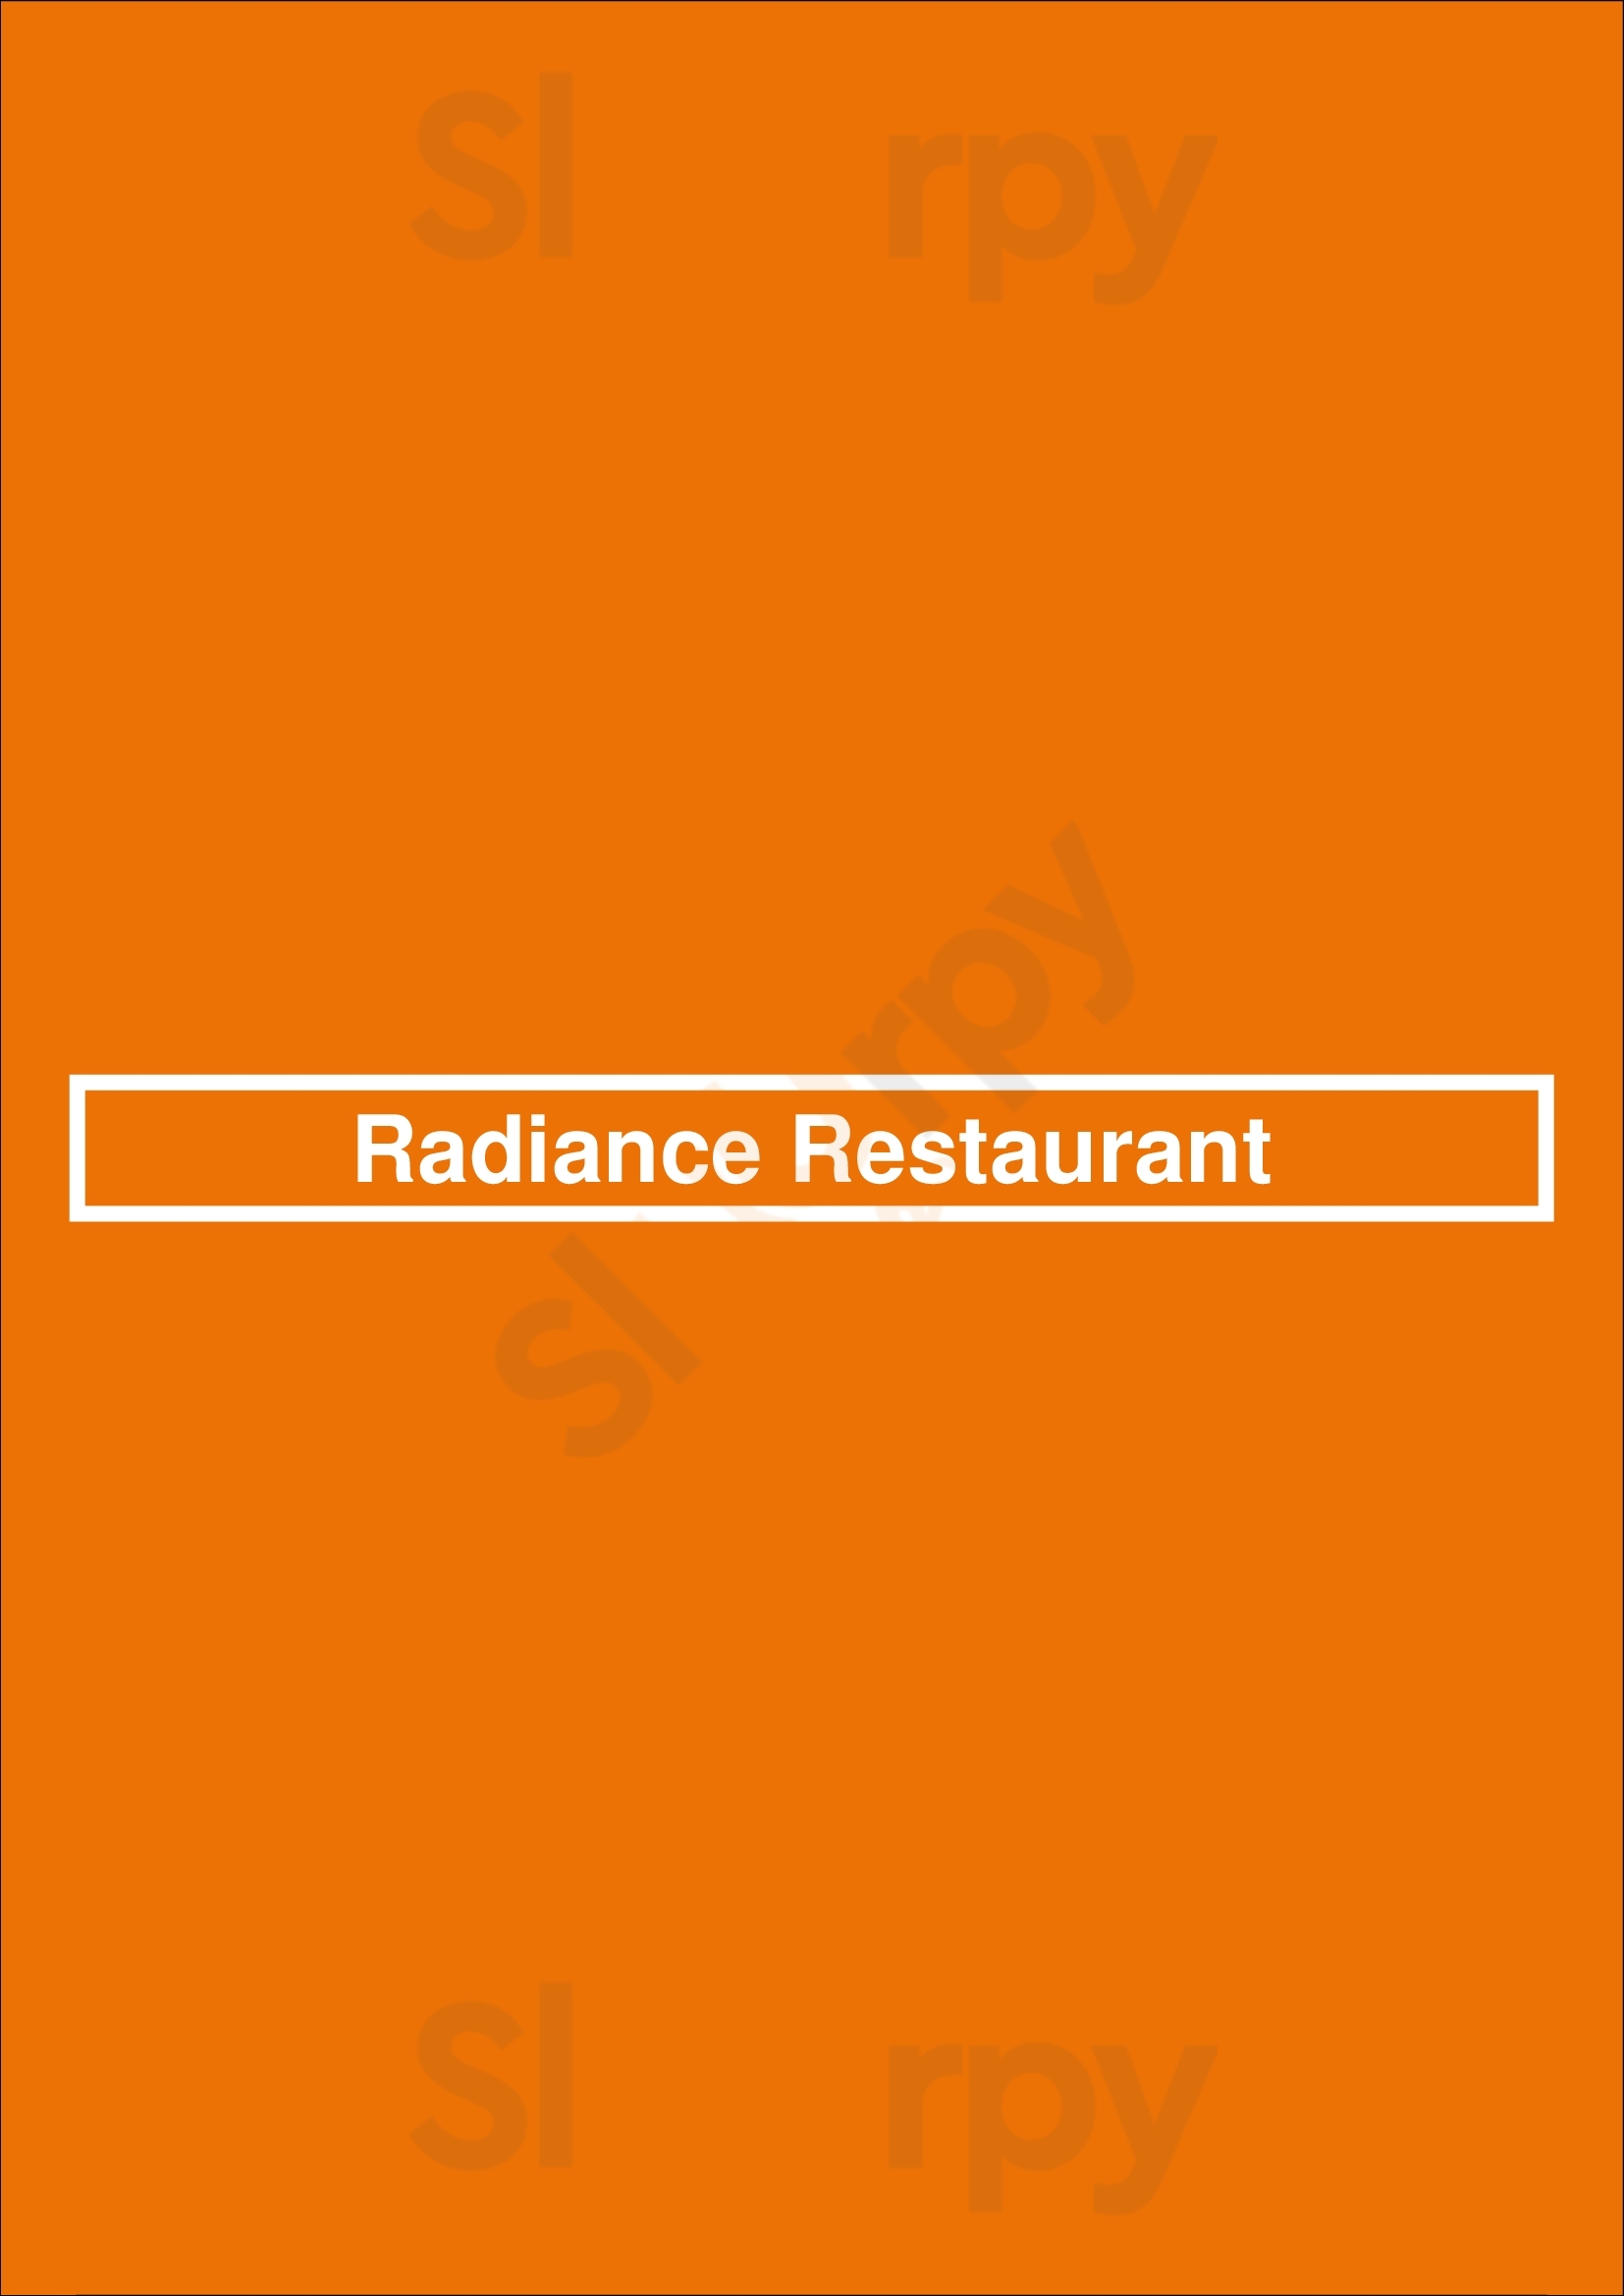 Radiance Restaurant Brooklyn Menu - 1